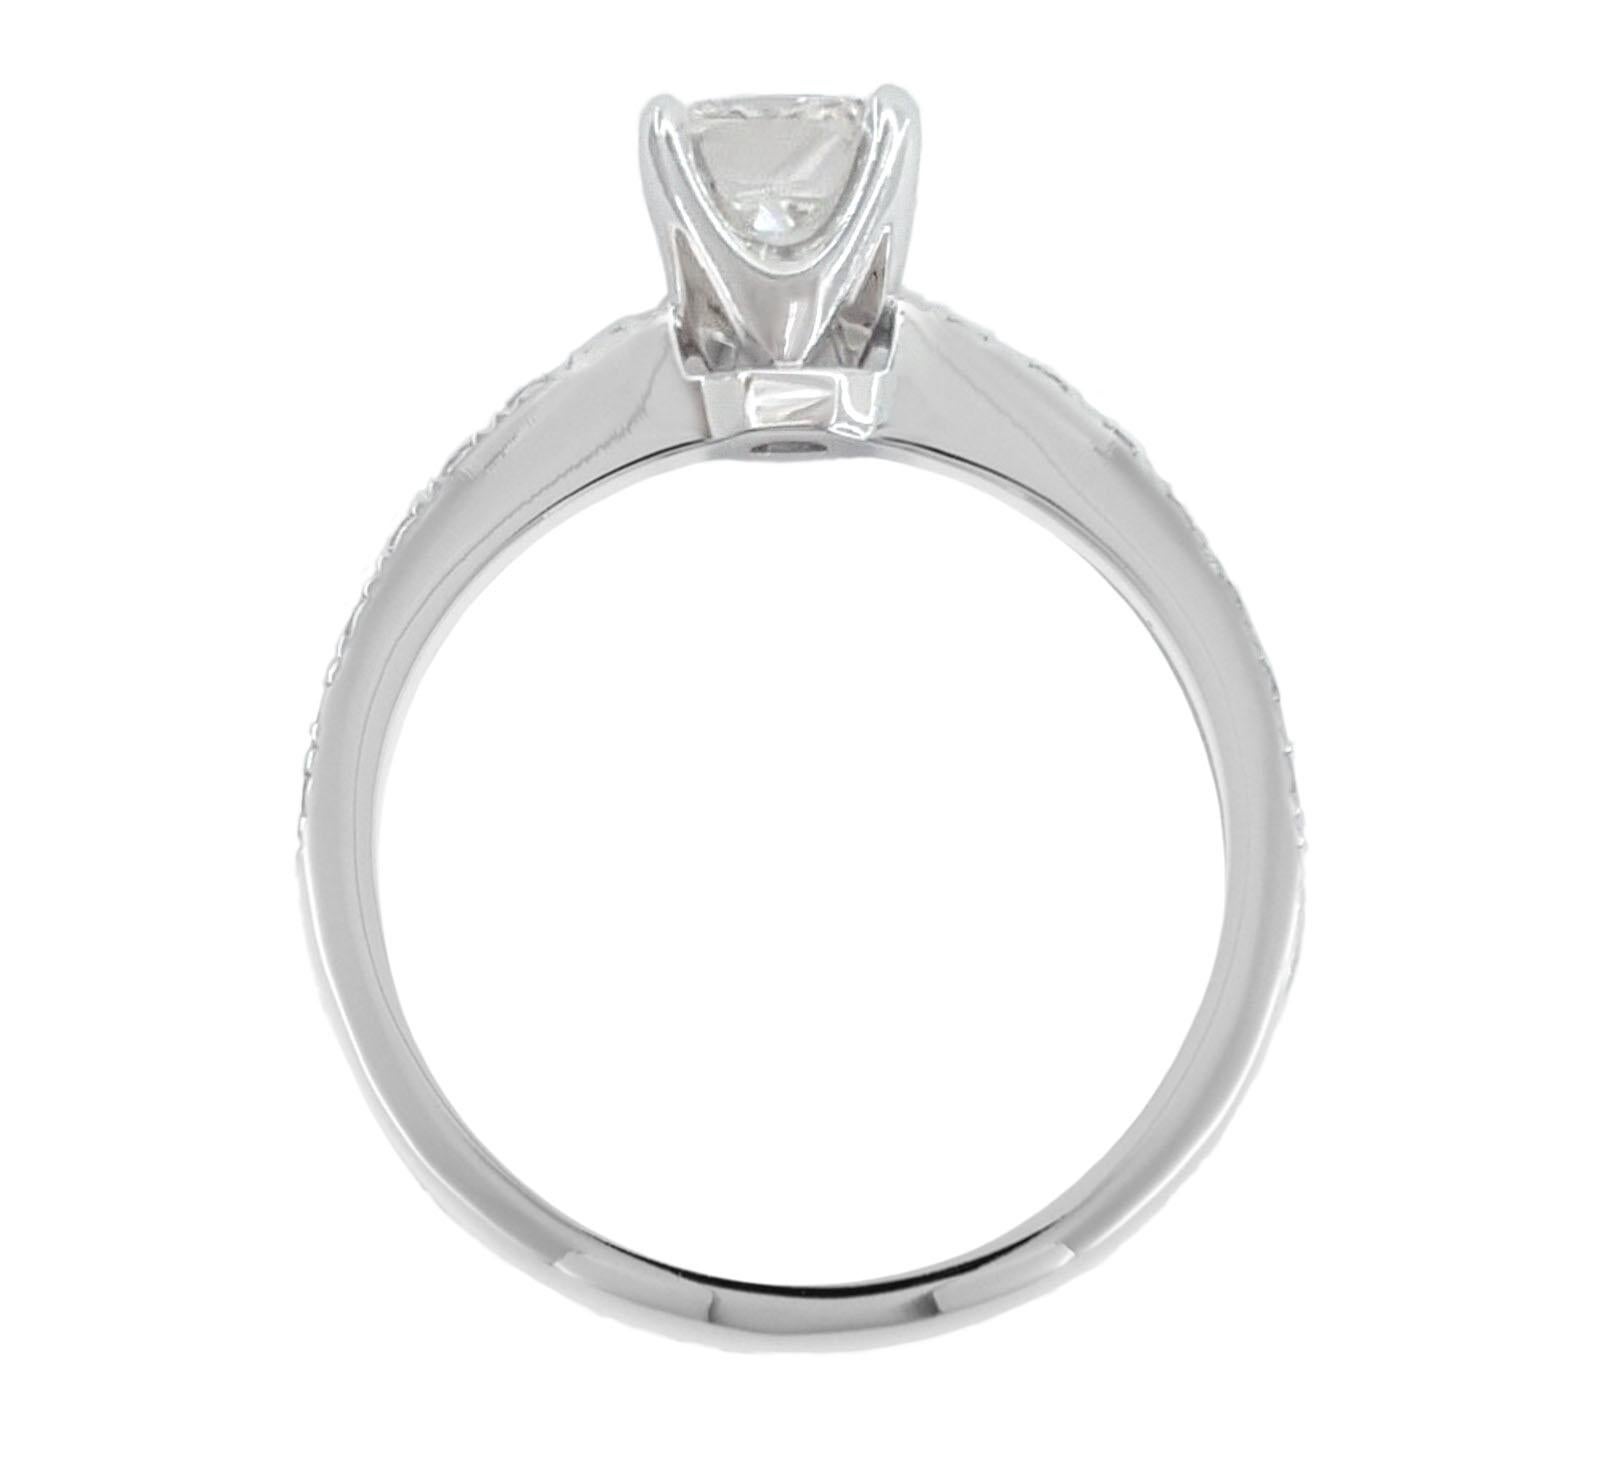 1 carat internally flawless diamond price